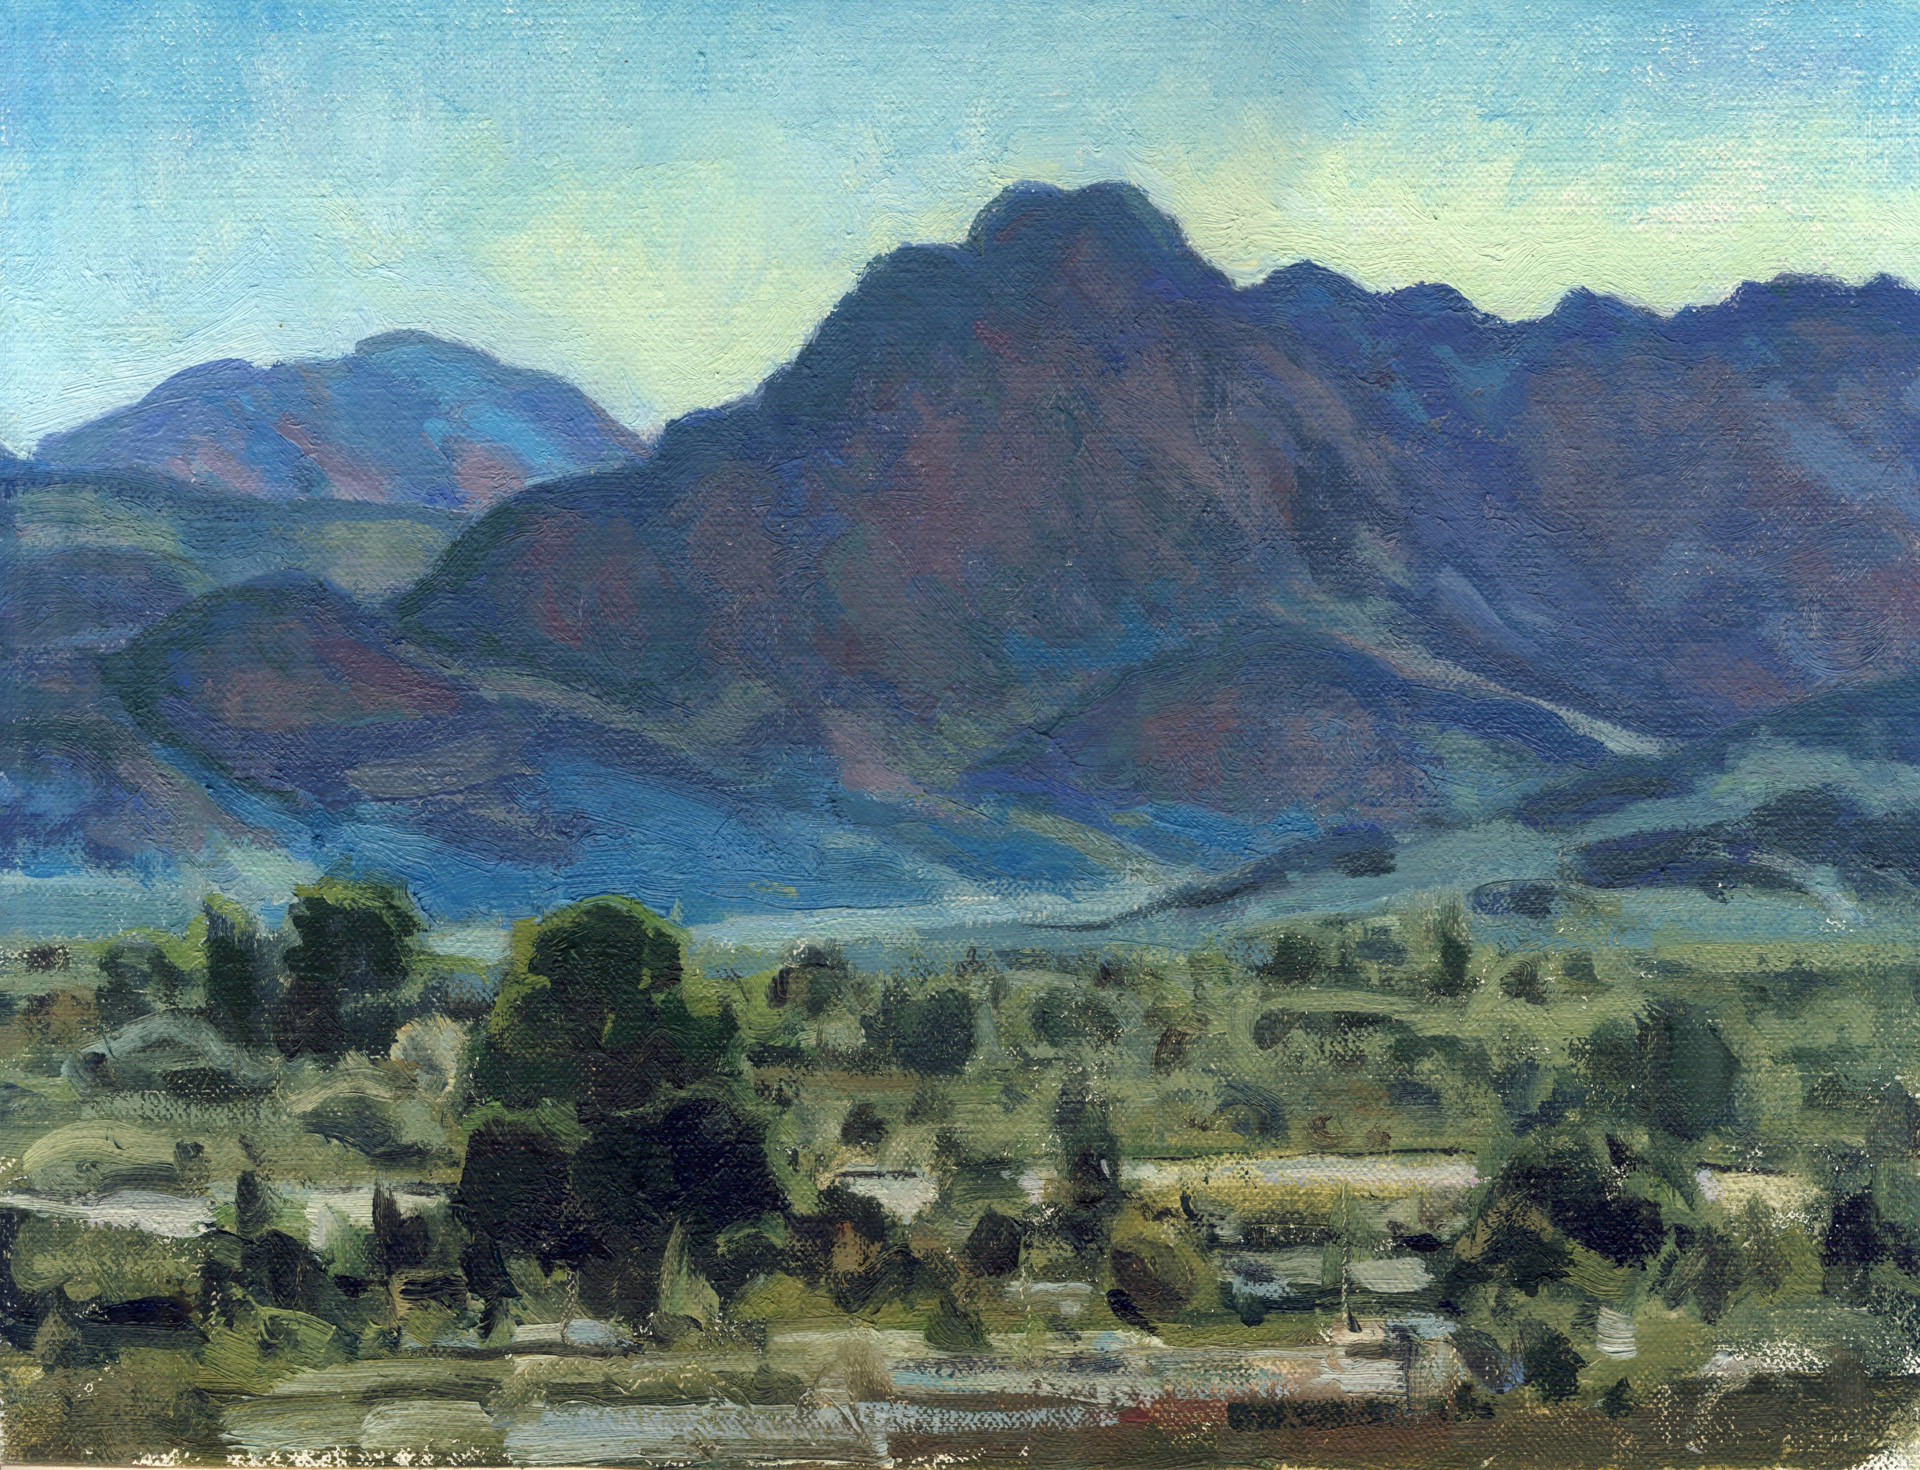 Red Hills of Tucson by Bill Gallen